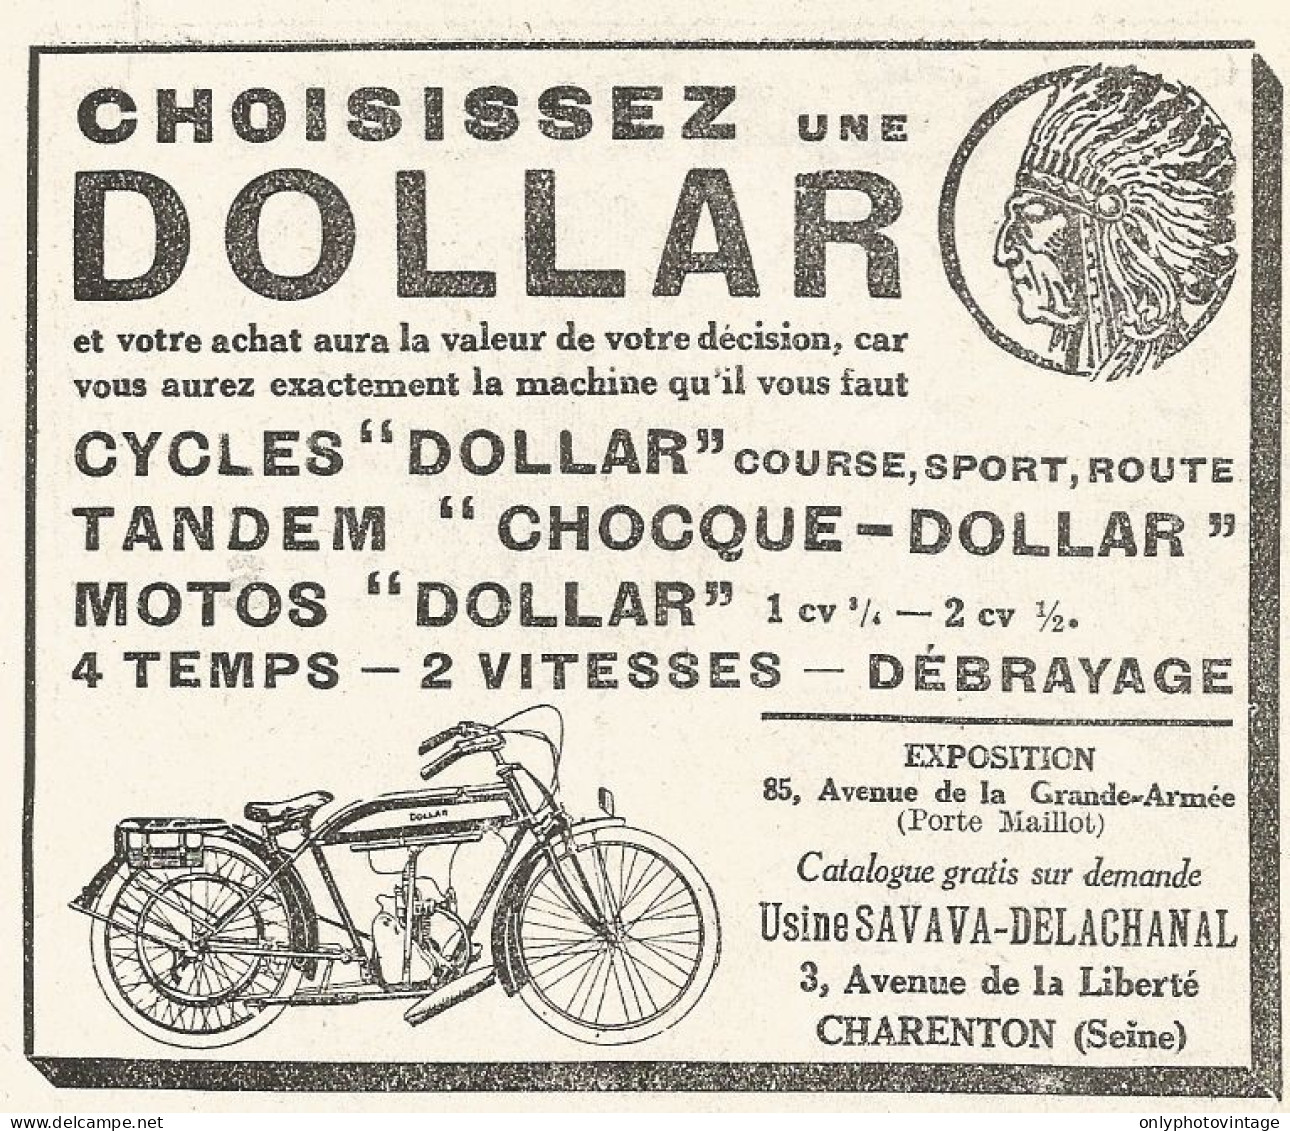 Motocicletta DOLLAR - Pubblicitï¿½ Del 1925 - Old Advertising - Advertising